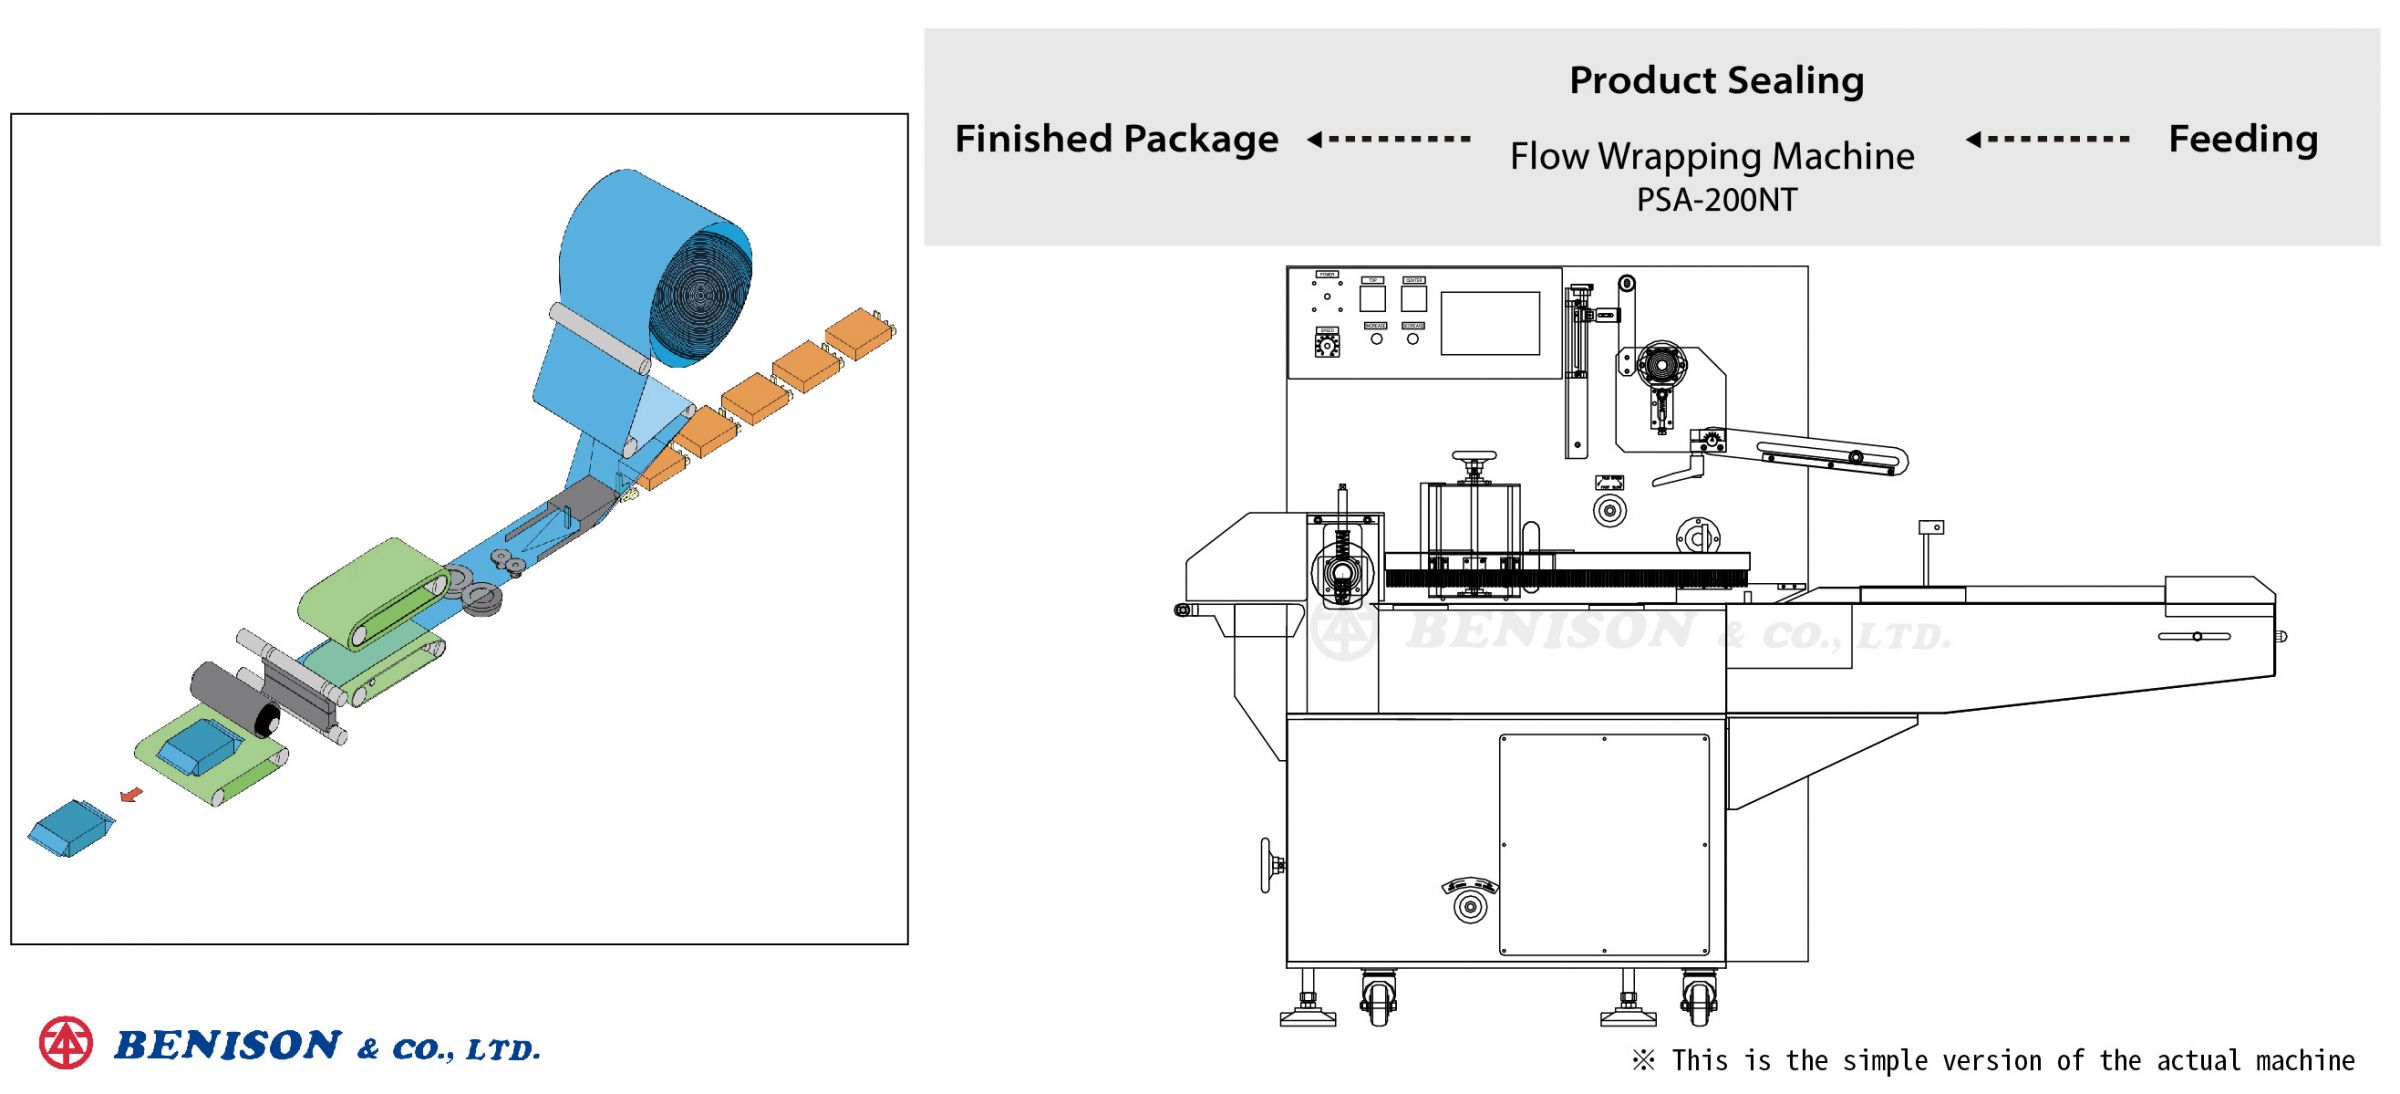 마시멜로 비스킷 솔루션을 위한 수평형 플로우 랩핑 기계, PSA-200NT